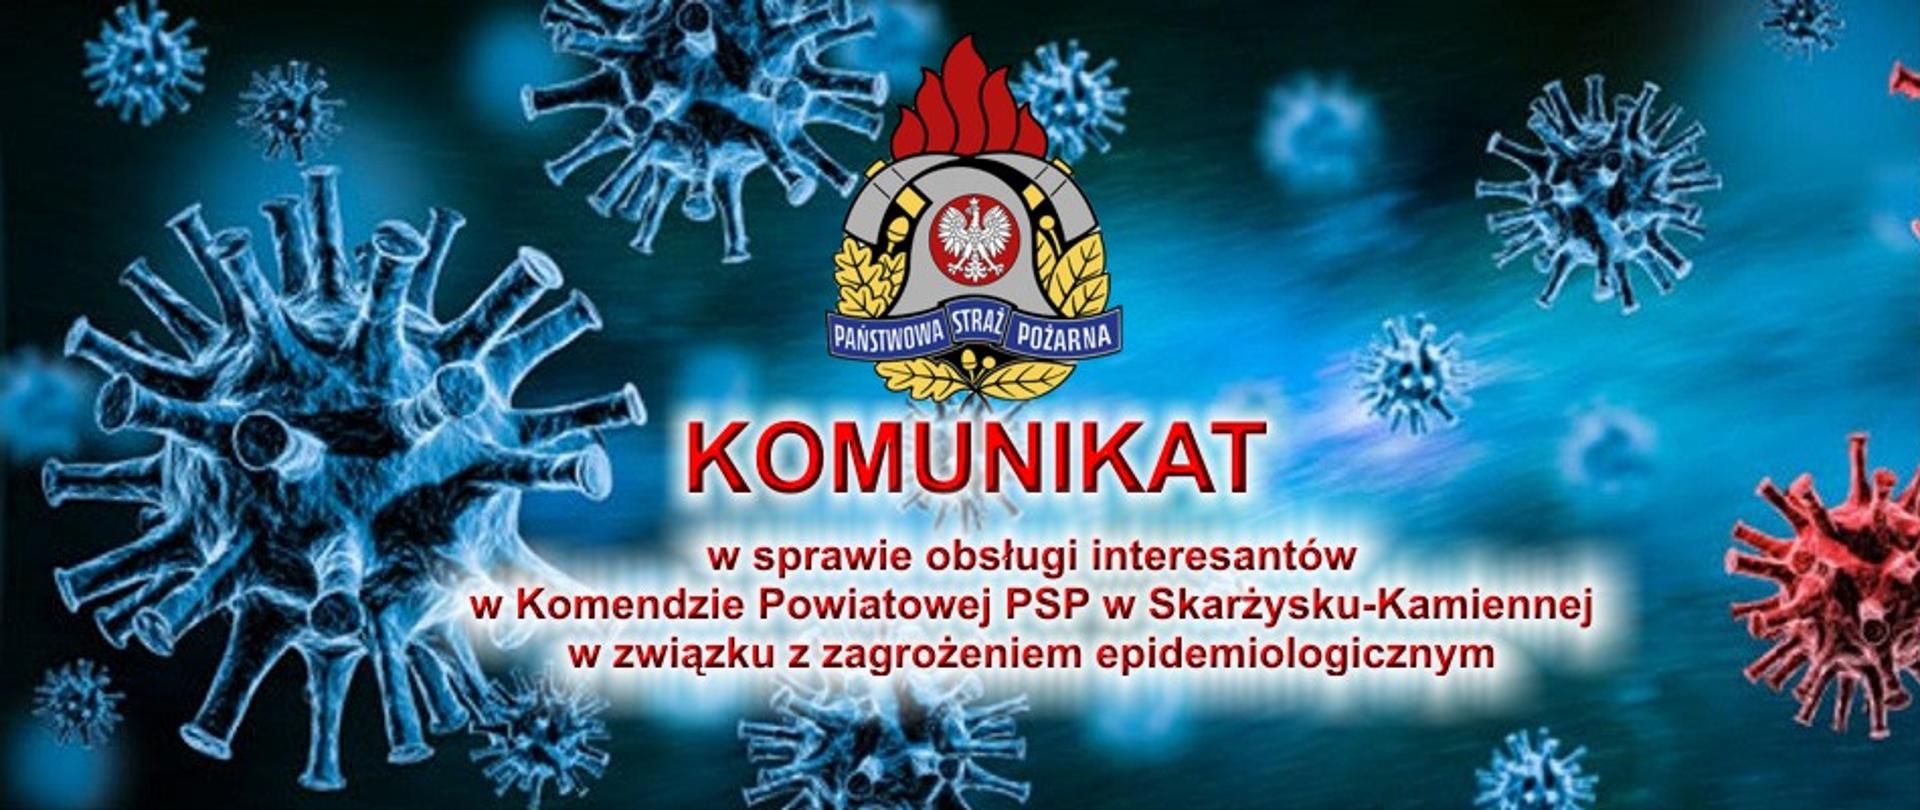 Komunikat w sprawie obsługi interesantów w Komendzie Powiatowej PSP w Skarżysku-Kamiennej w związku z zagrożeniem epidemiologicznym